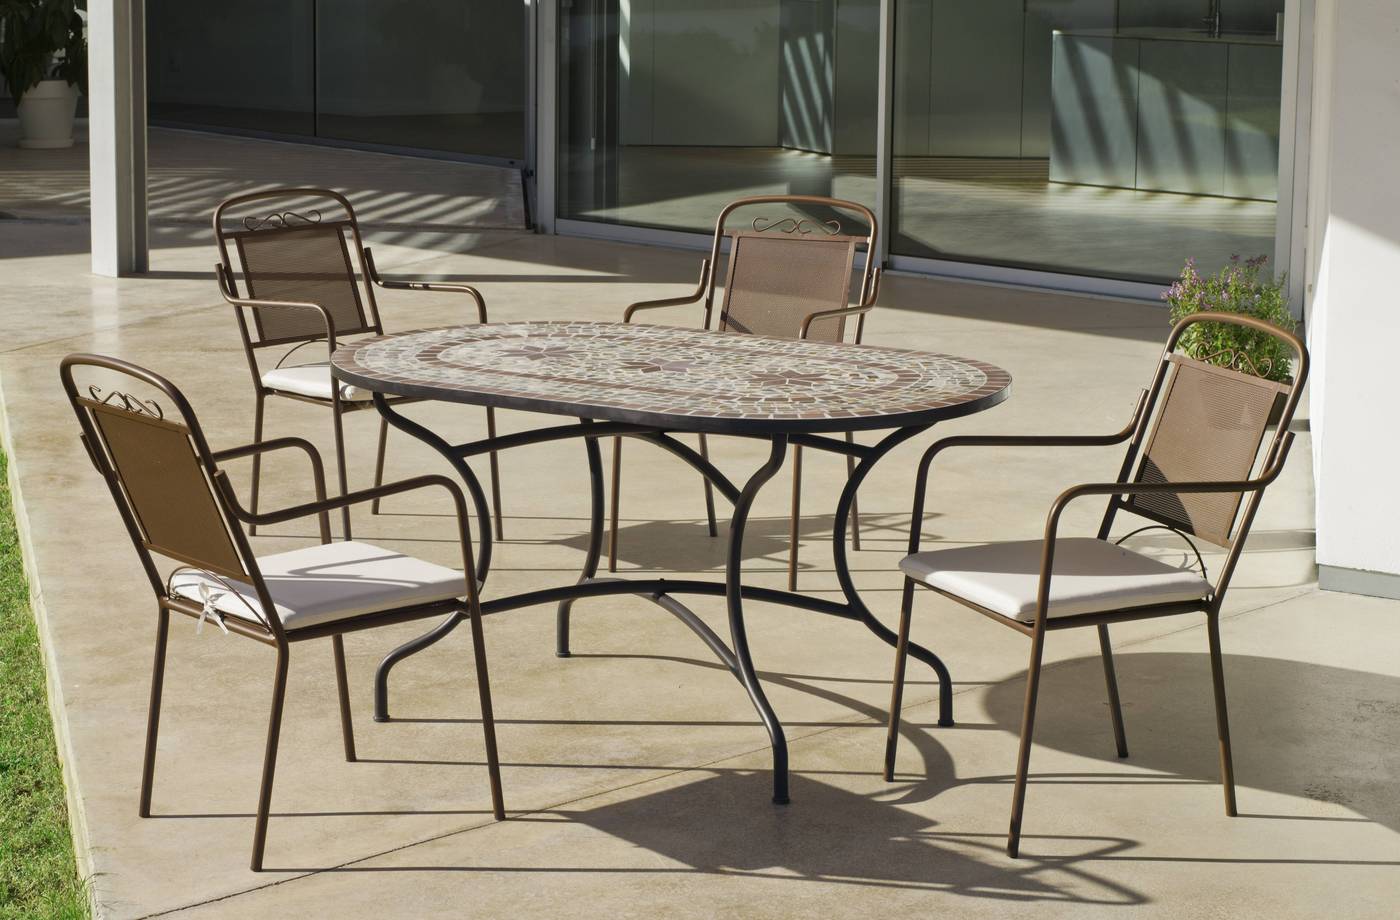 Conjunto para terraza o jardín: 1 mesa de forja con tablero mosaico + 4 sillones de forja + 4 cojines. Mesa válida para 6 sillones.